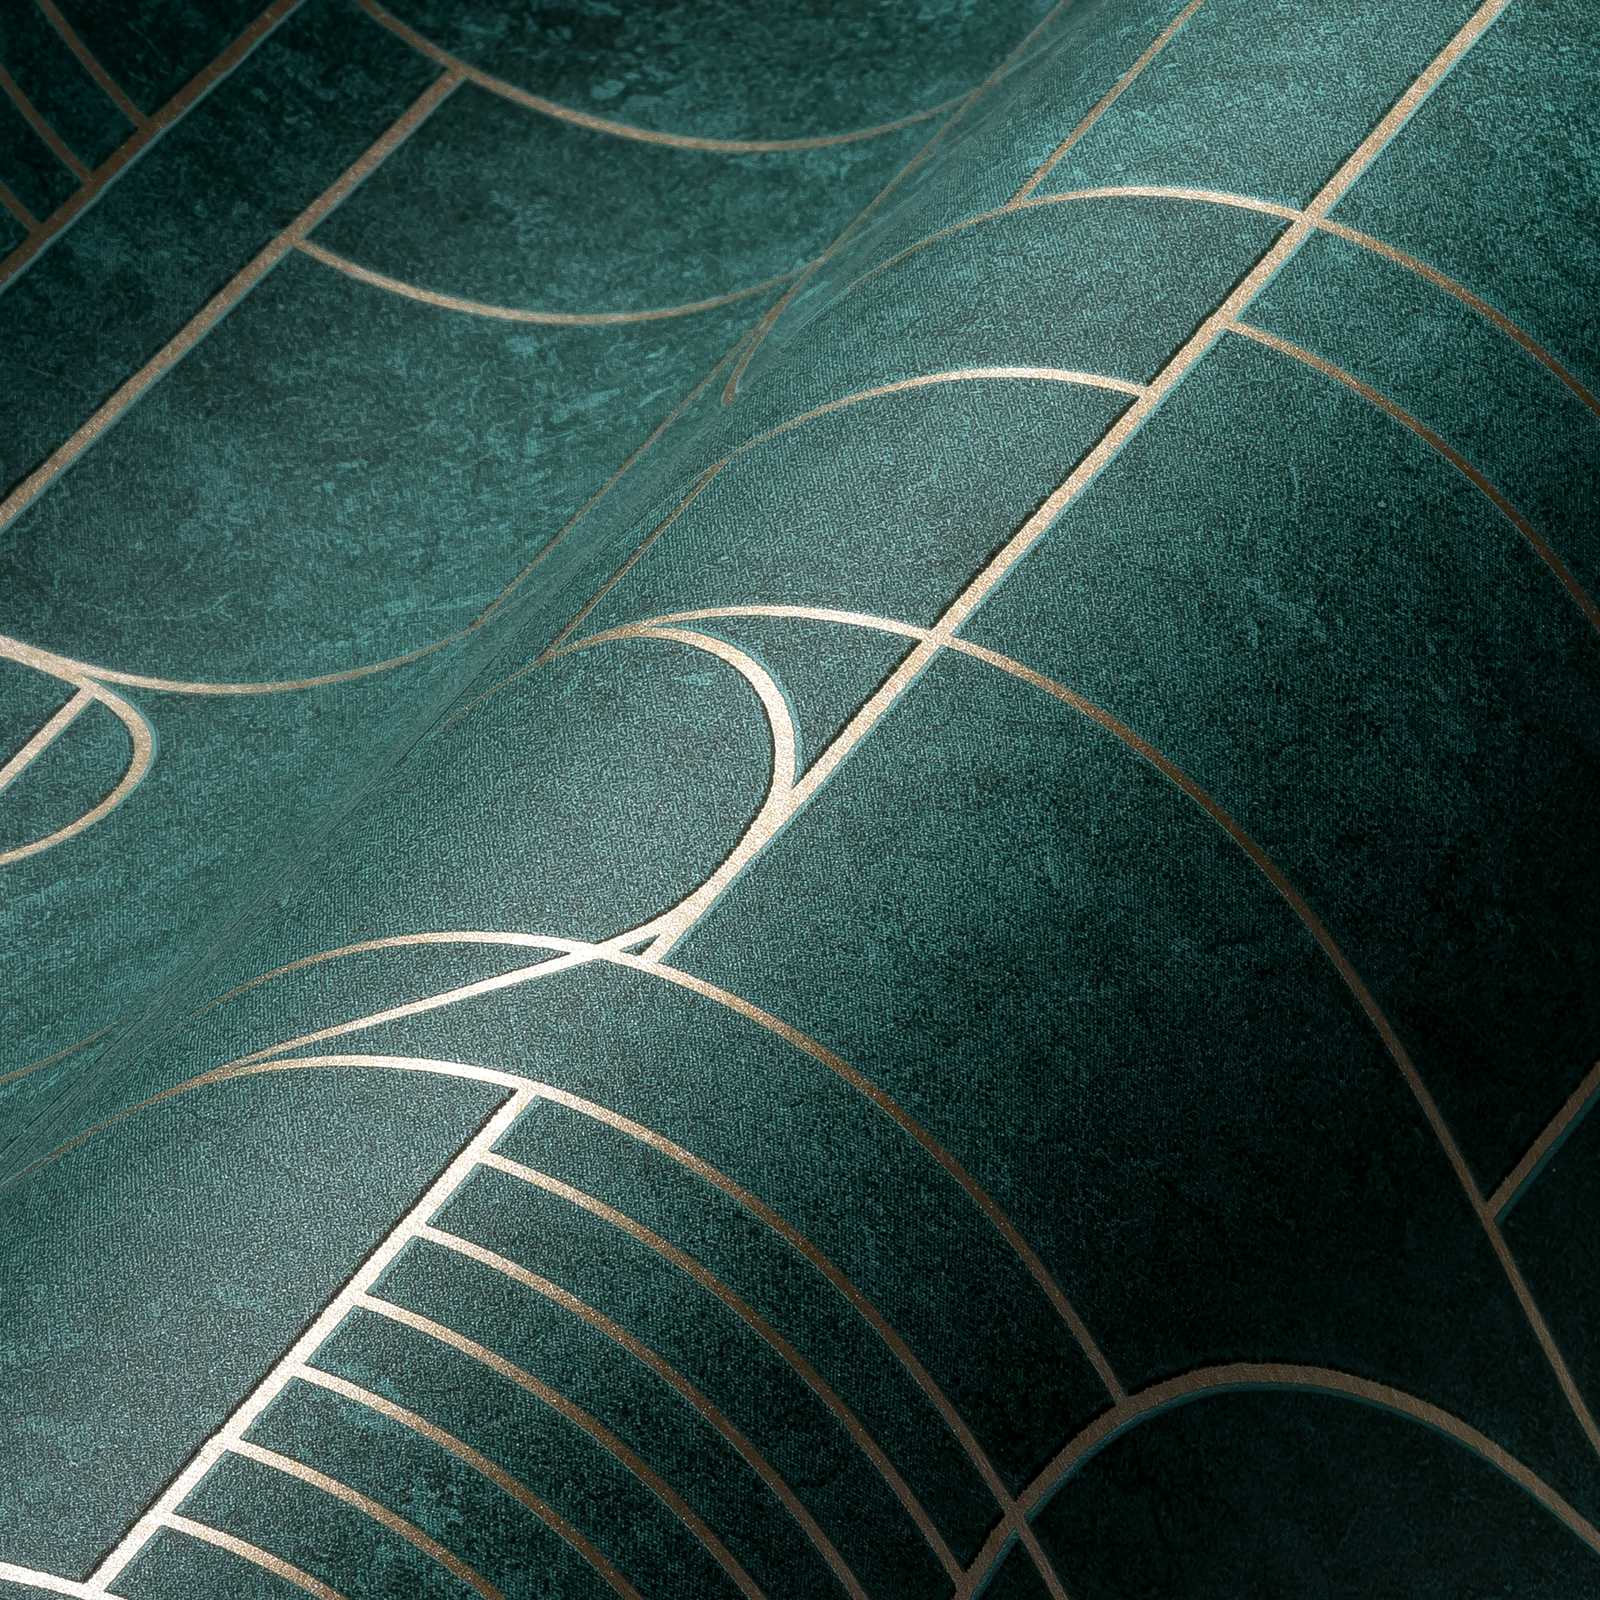             Tegellook behang art deco design gemarmerd - groen, metallic
        